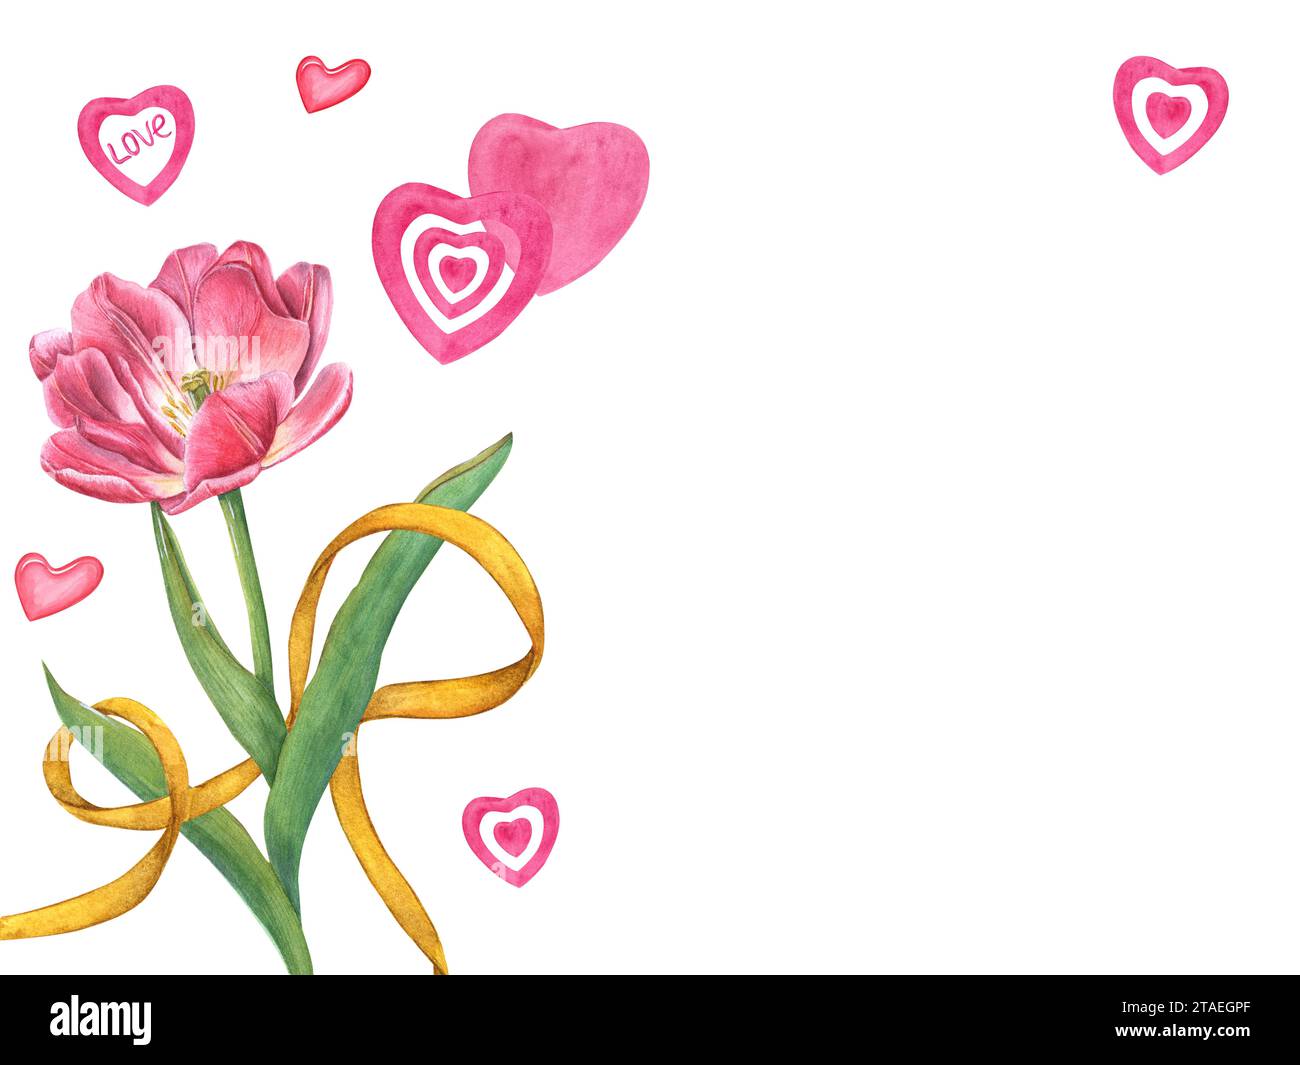 Tulpenstrauß mit gelbem Band, rosa Herzen um Blumen. Florale romantische Komposition. Leerzeichen für Text. Aquarellabbildung. Stockfoto